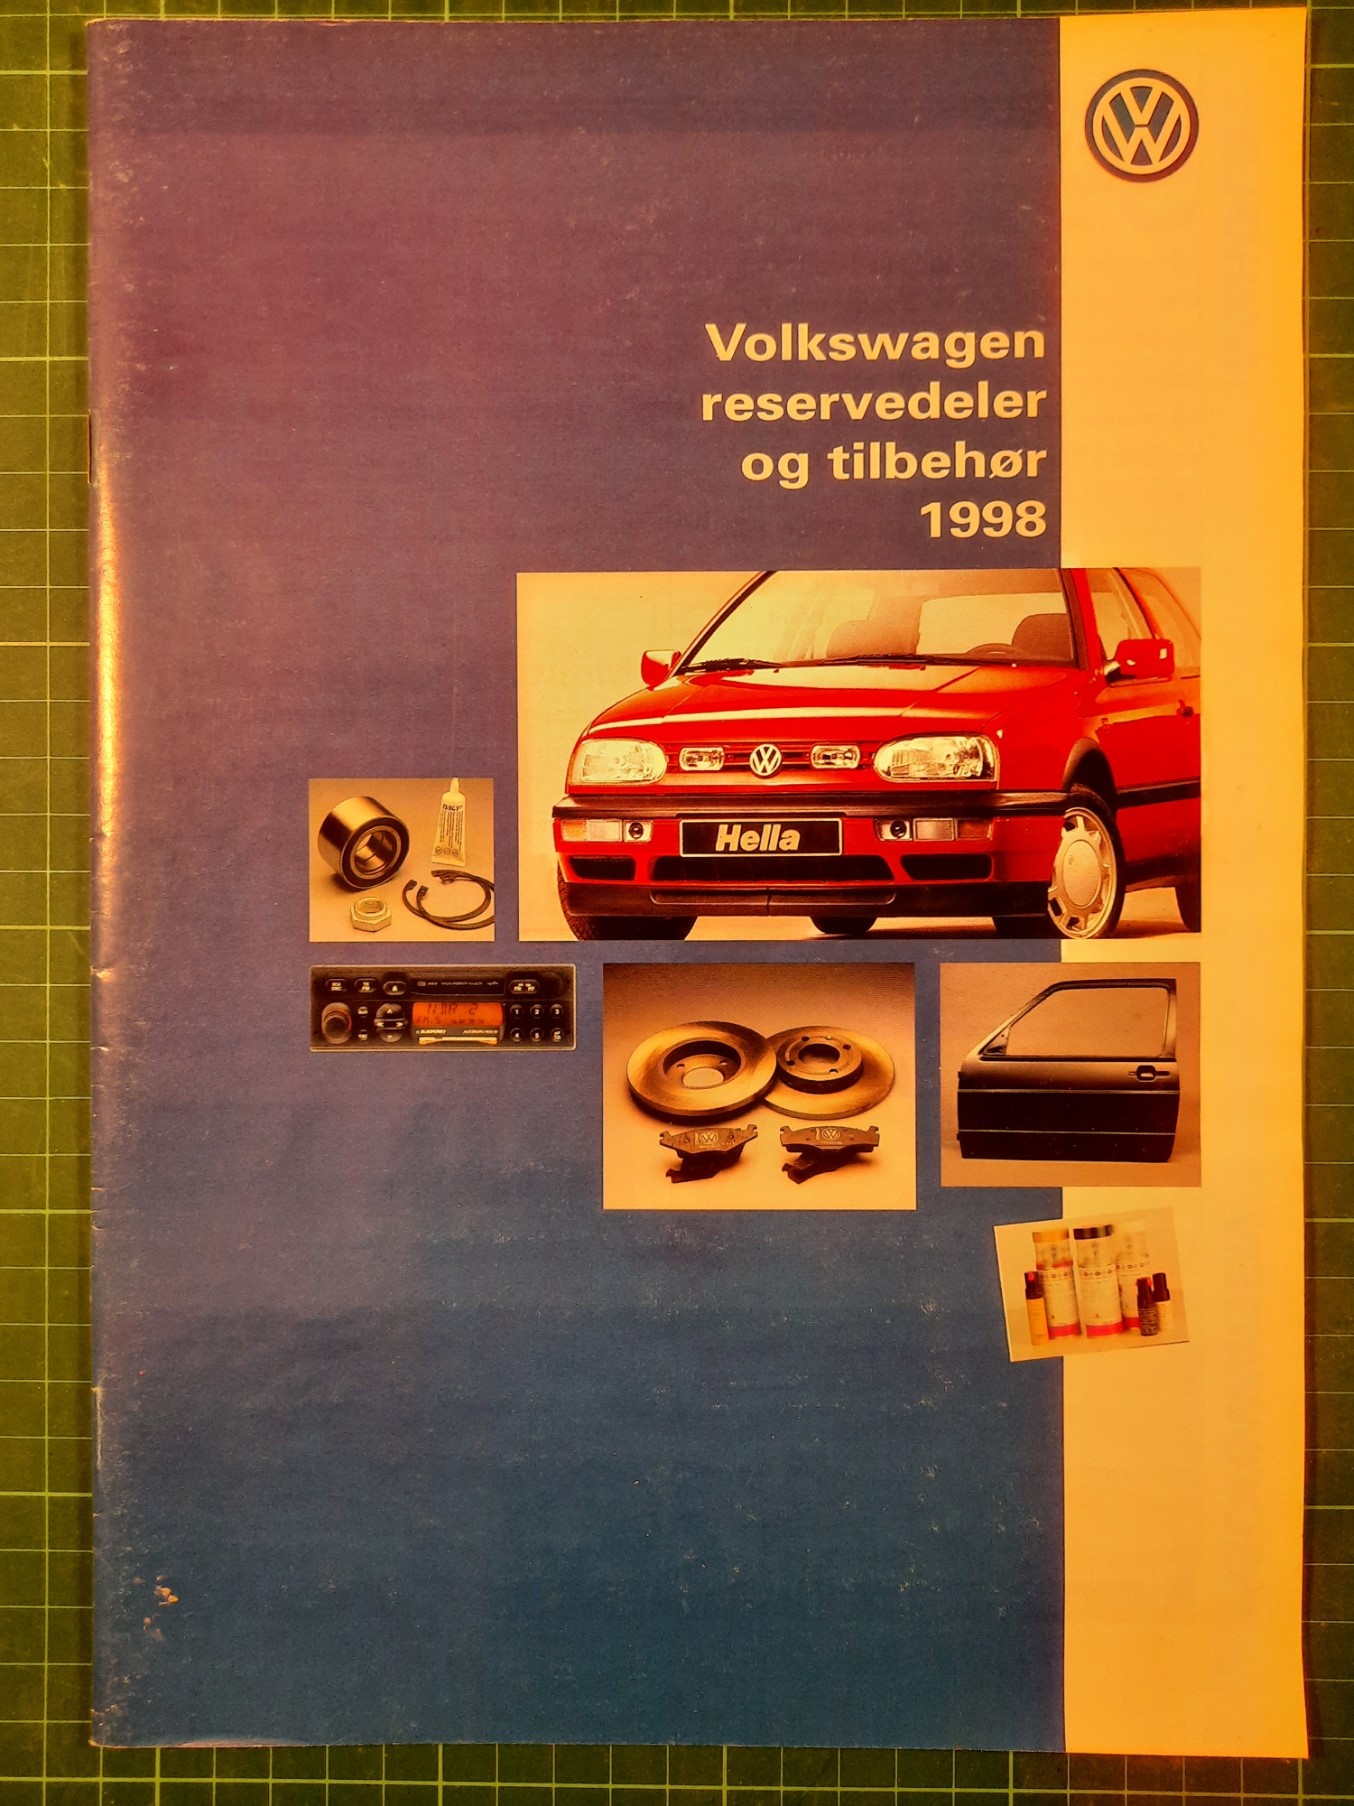 VW Reservedeler og tilbehør 1998